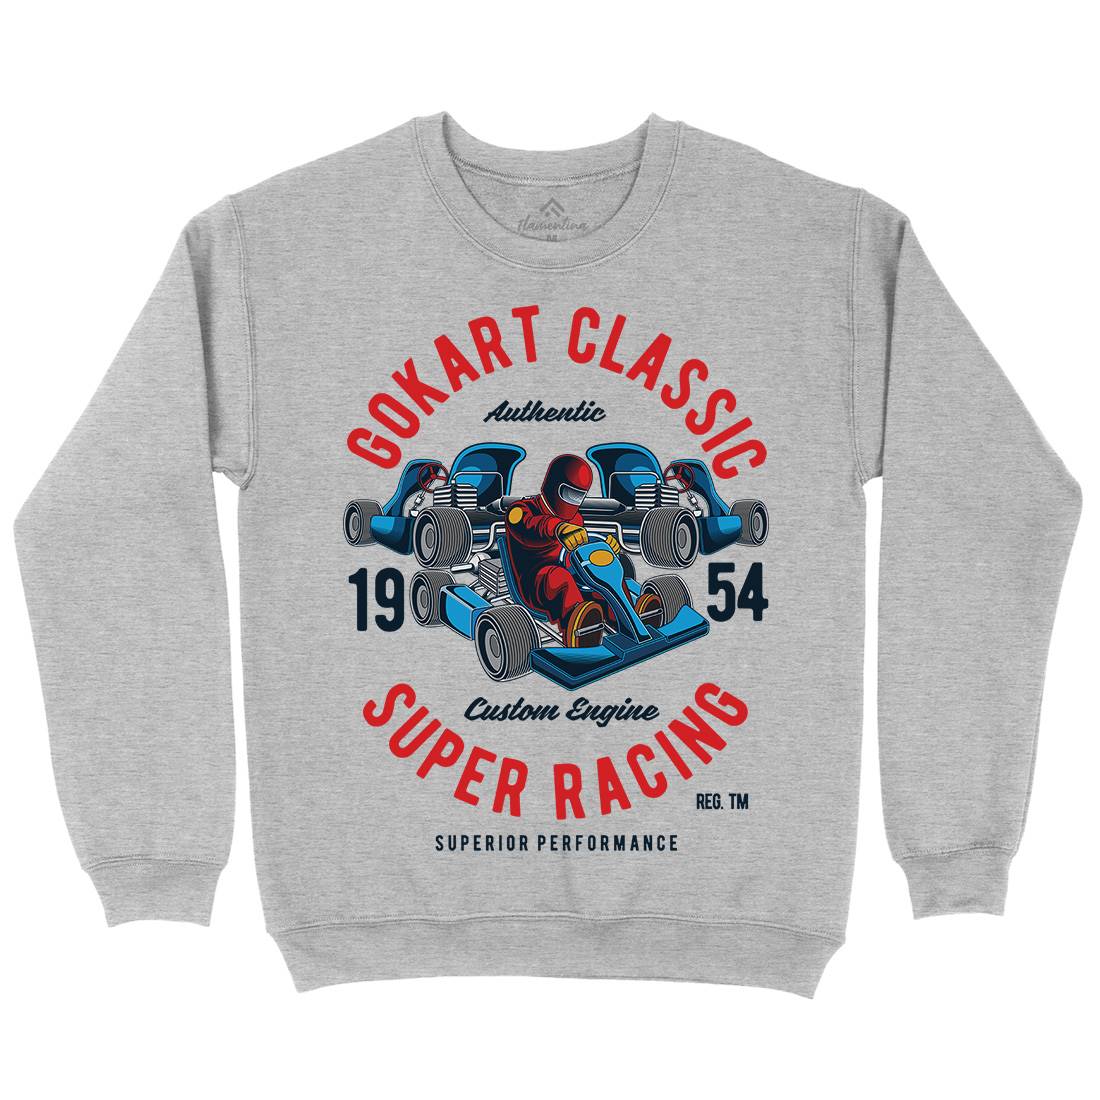 Go-Kart Classic Kids Crew Neck Sweatshirt Sport C366